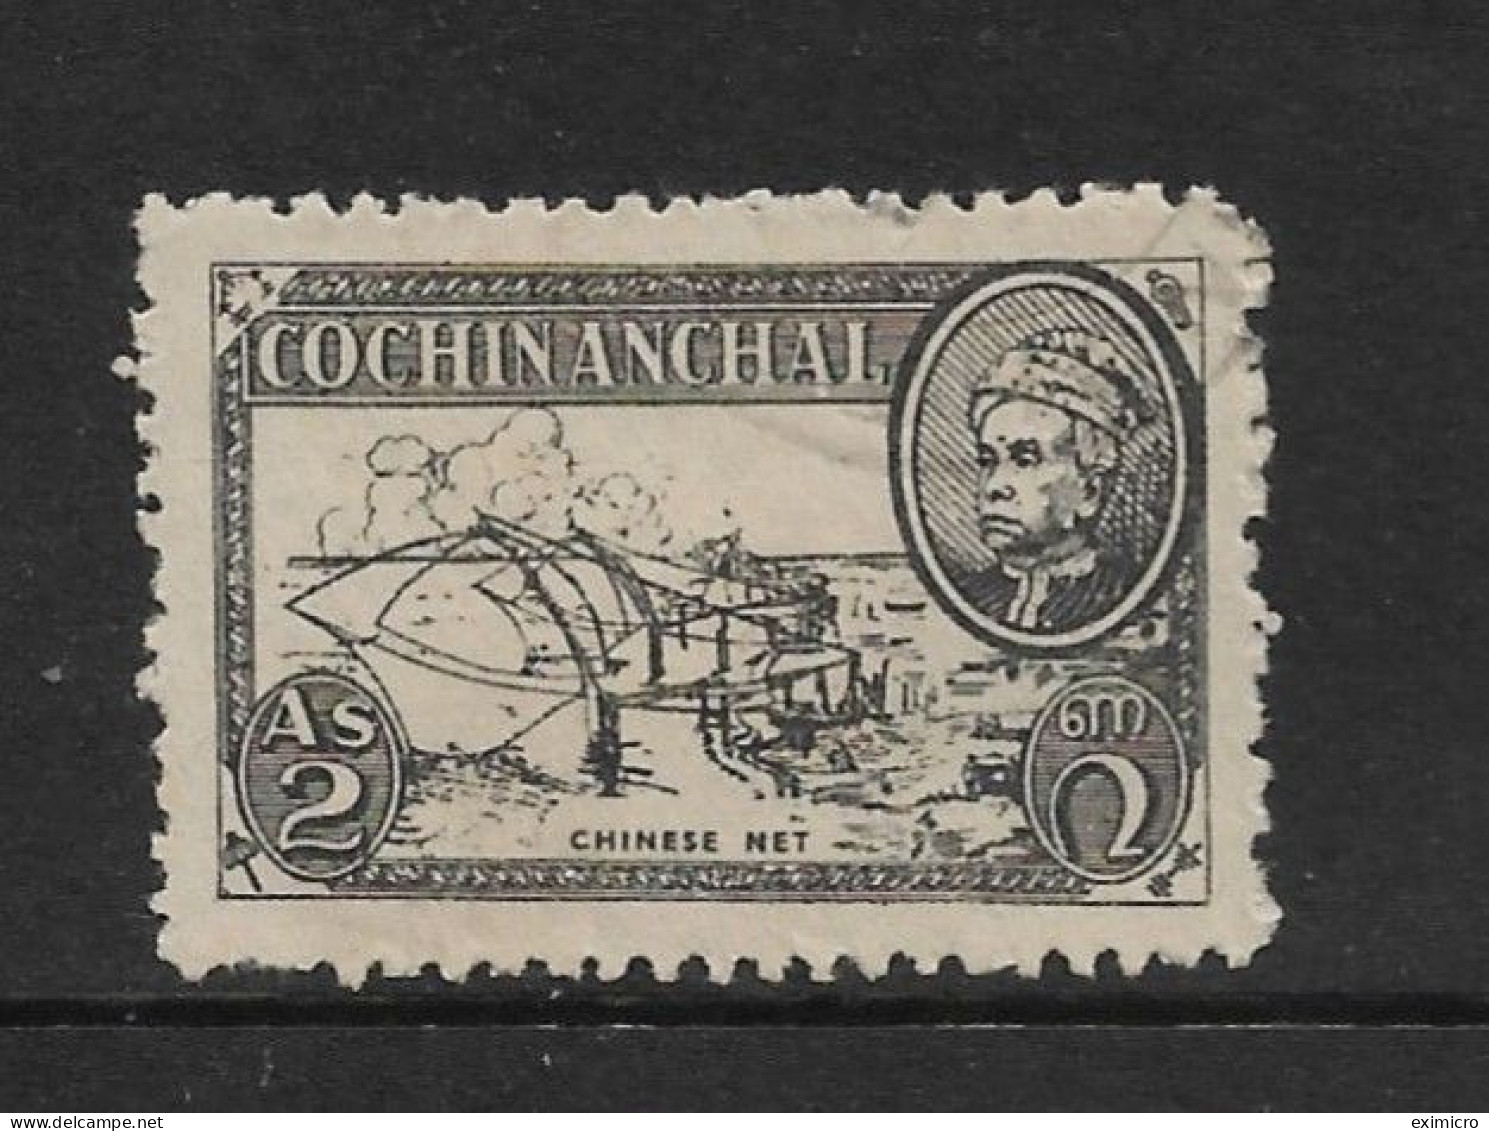 INDIA - COCHIN 1949 2a SG 117 FINE USED Cat £17 - Cochin